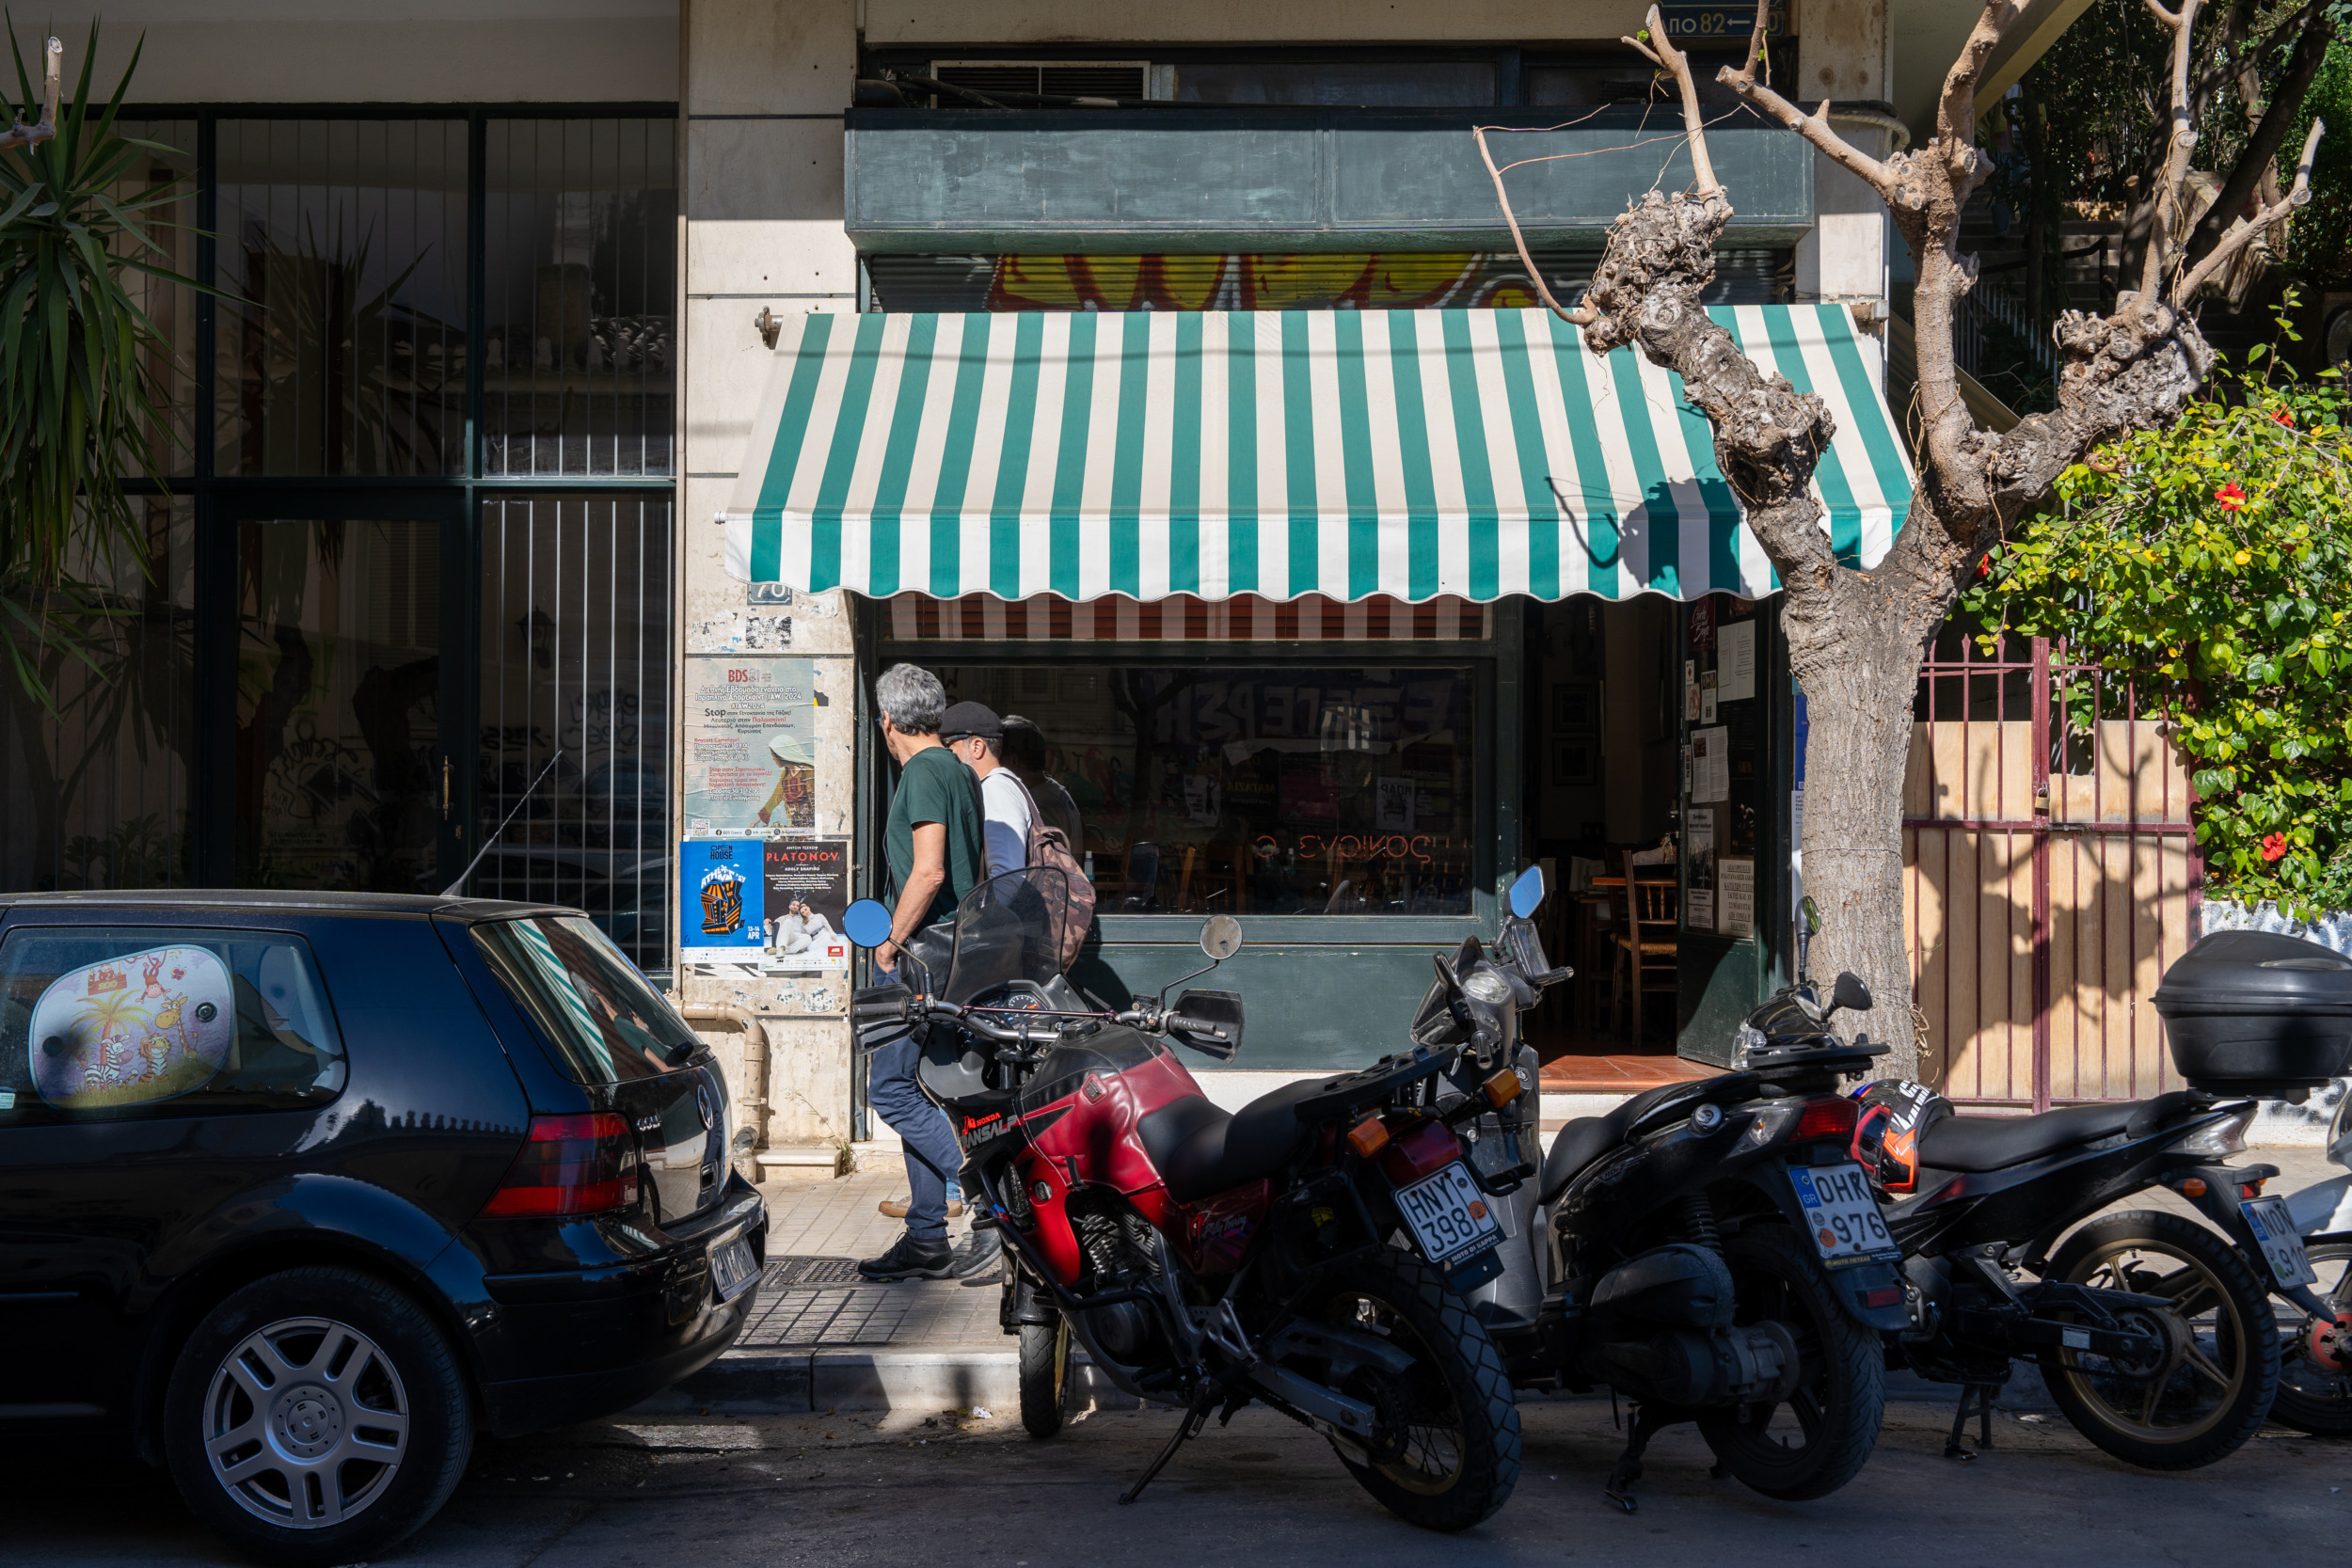 Das Café Parasaiko liegt zentral in Exarchia